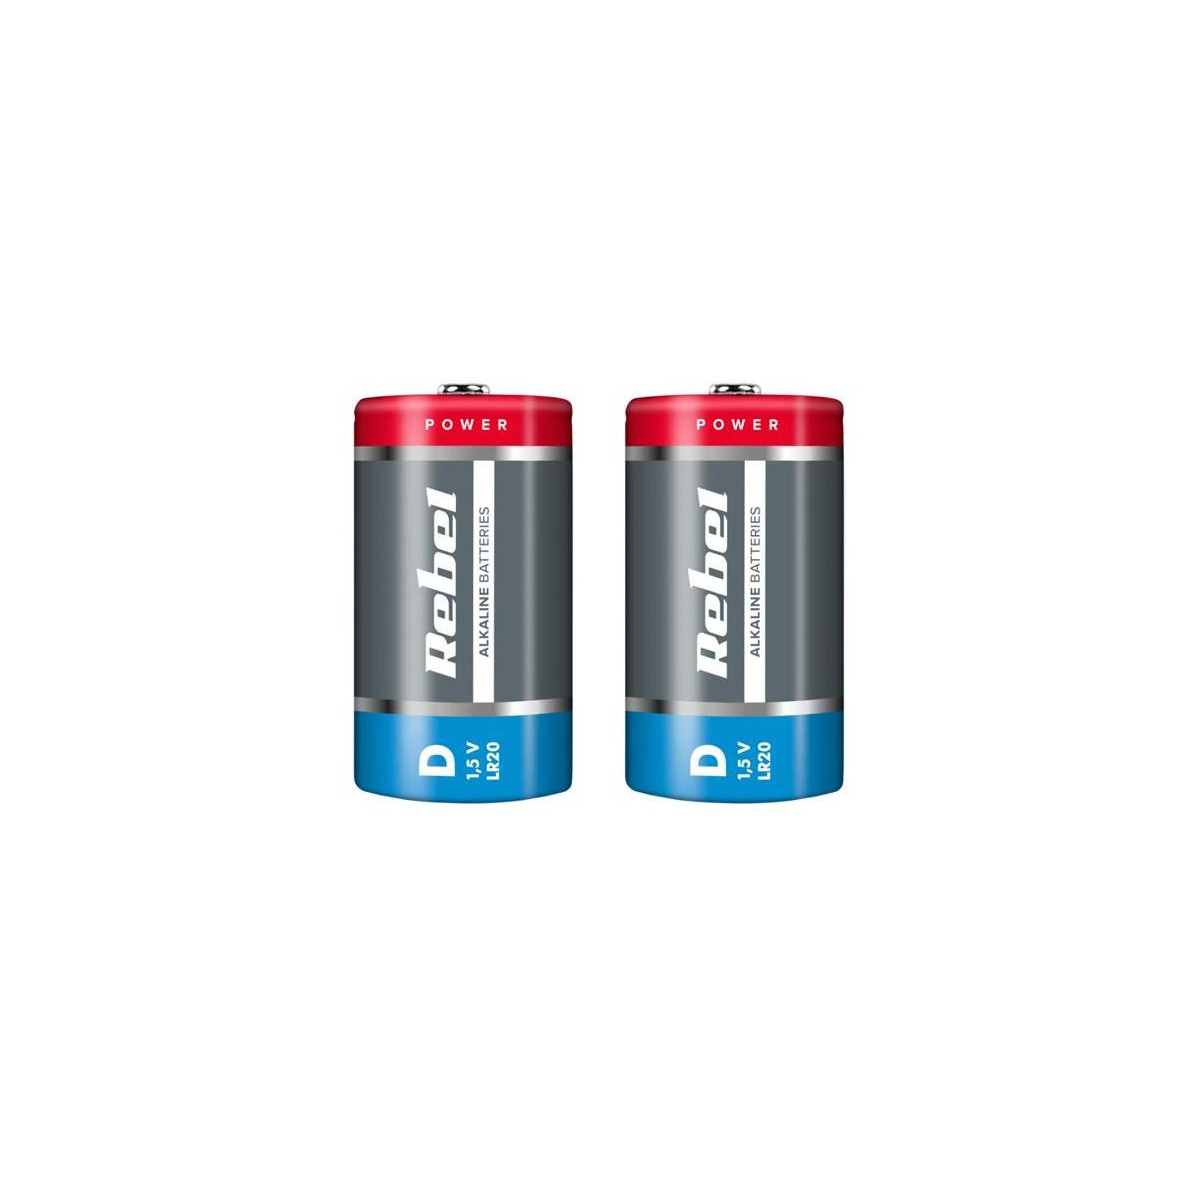 More about Baterie D (R20) alkalická REBEL Alkaline 2ks / shrink BAT0064